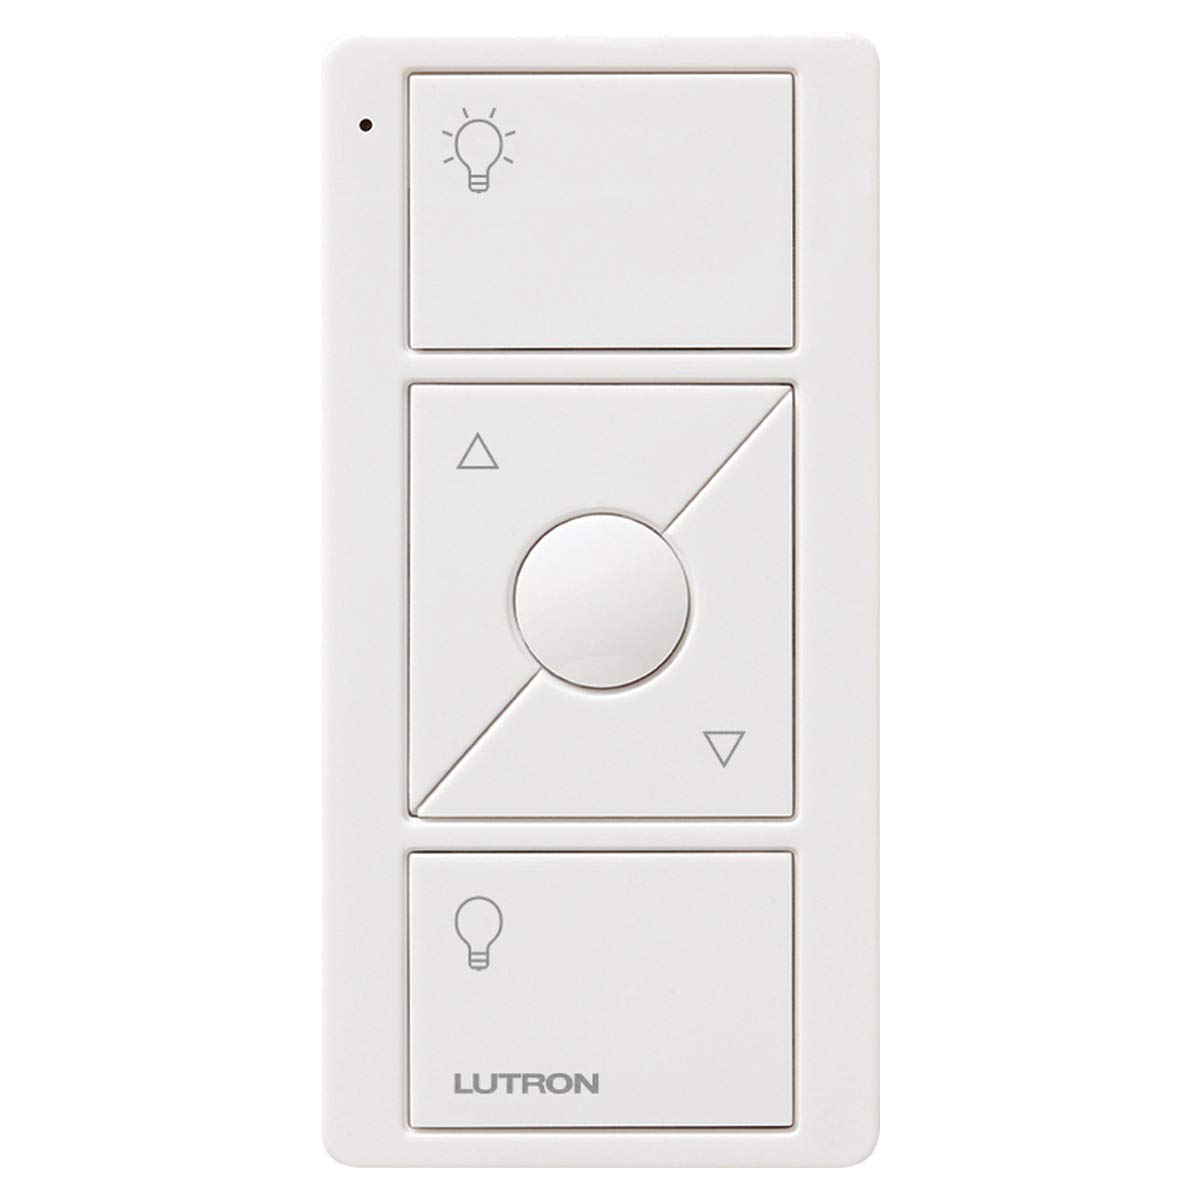 Lutron Pico Smart Remote Control